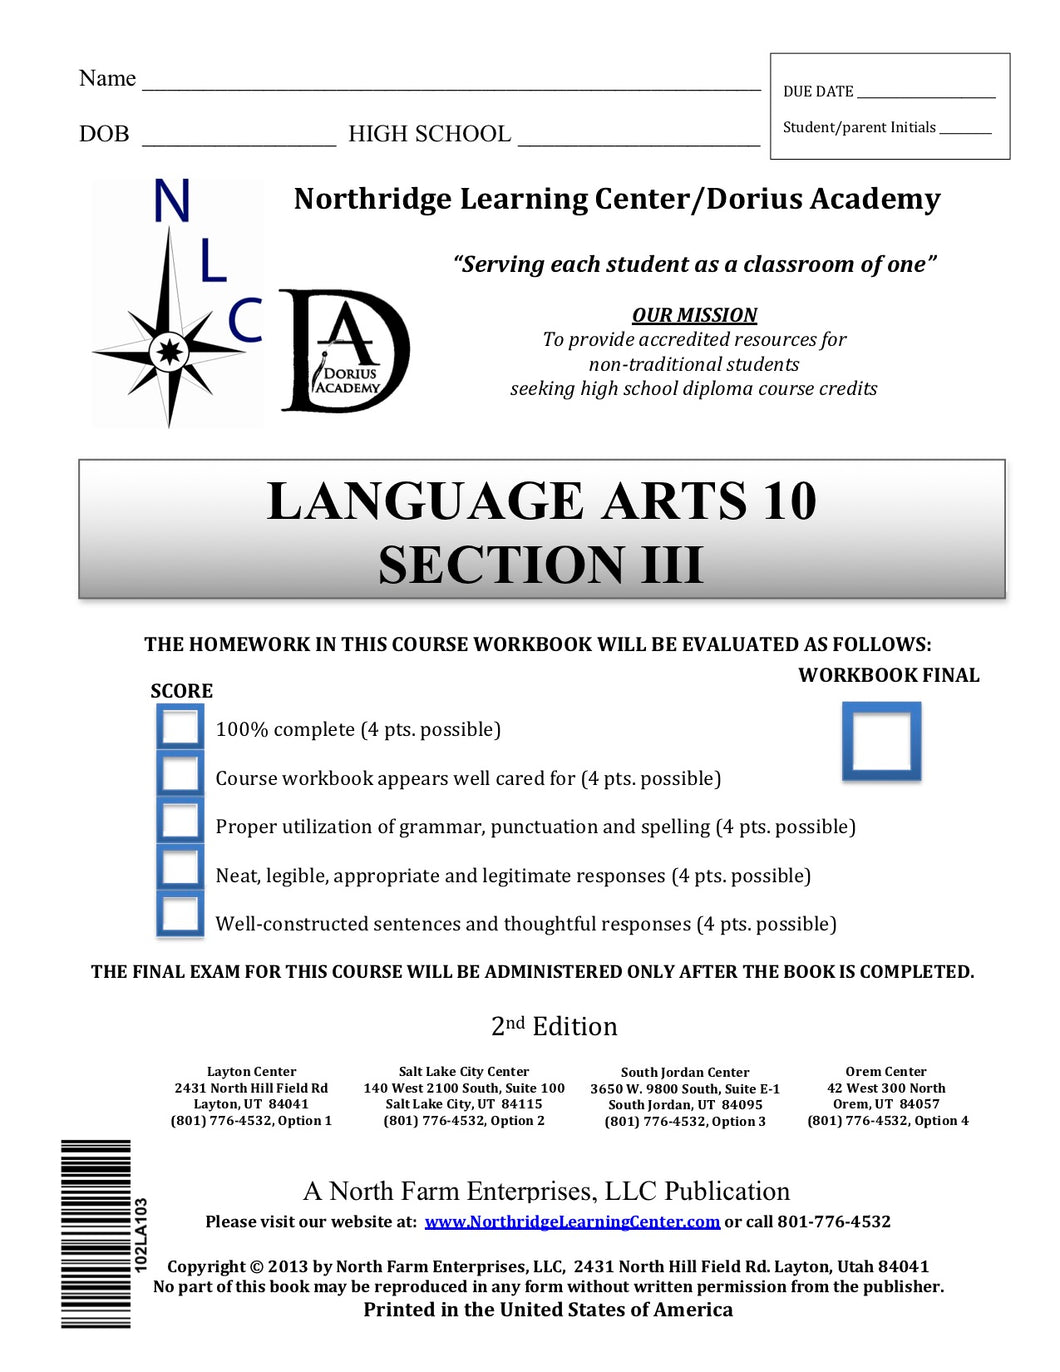 Language Arts 10, Section III